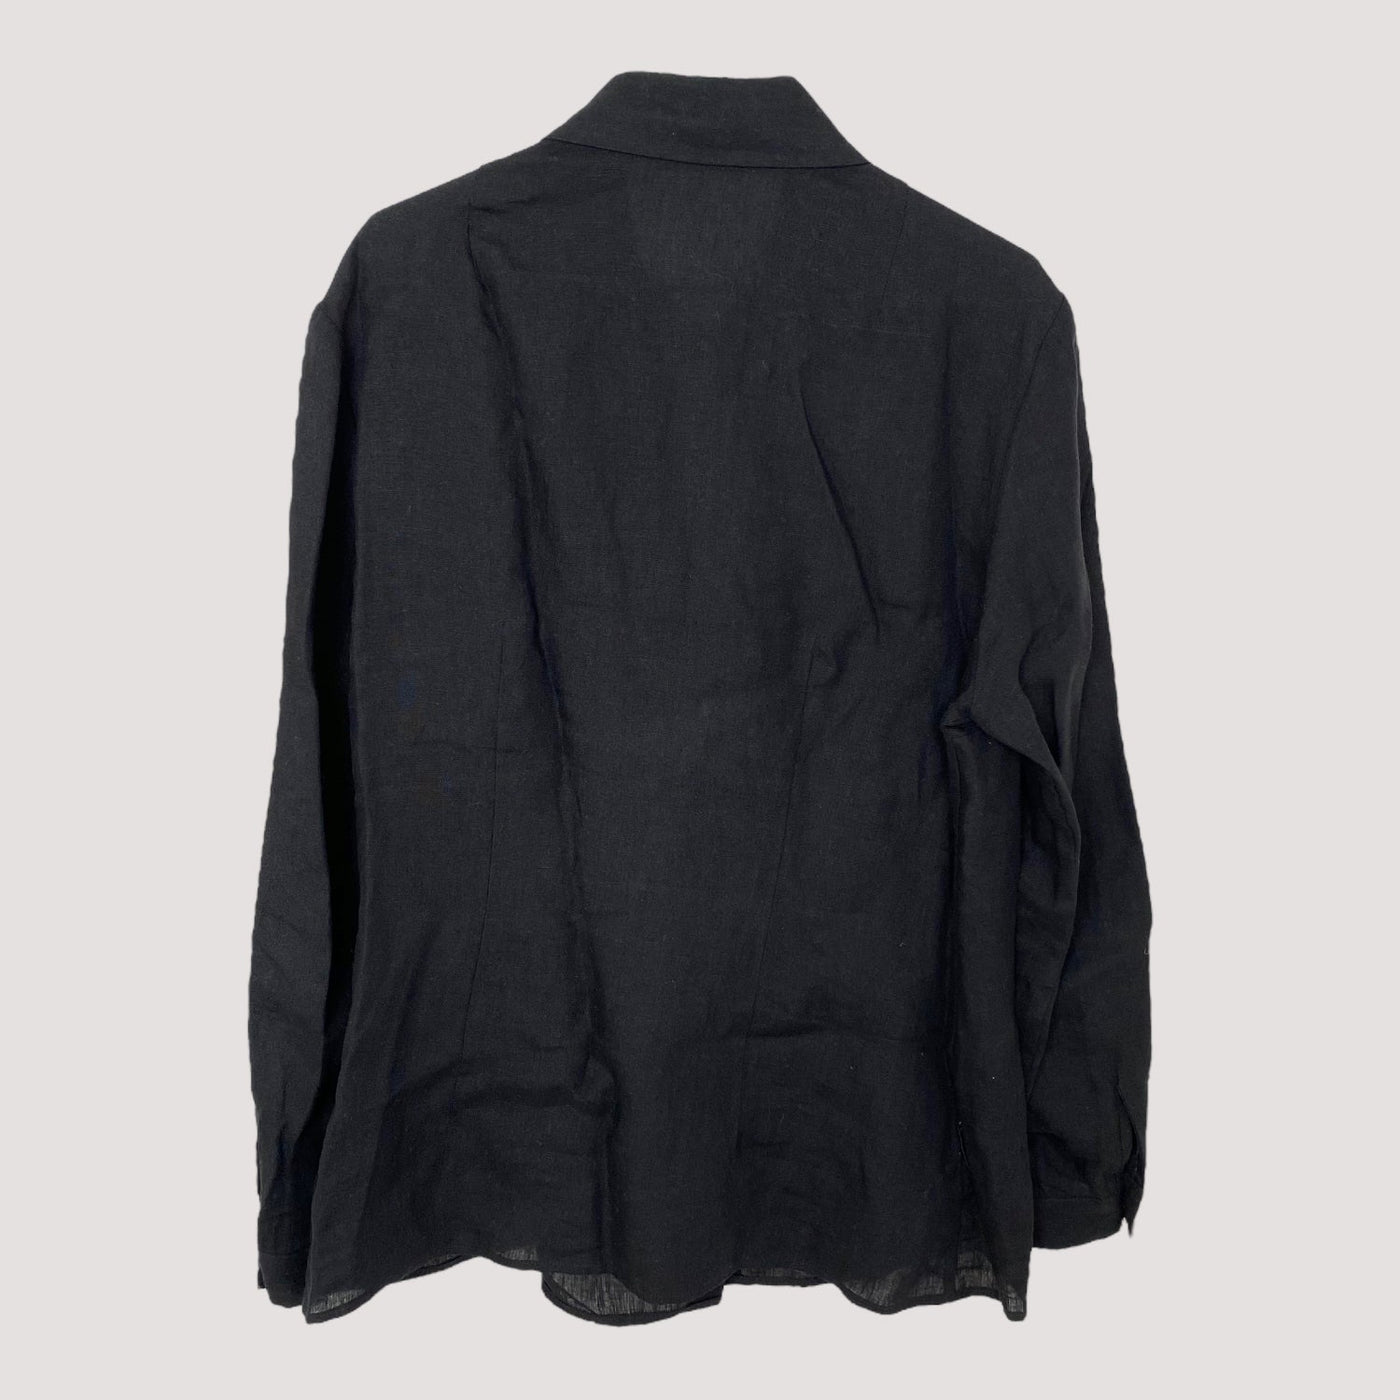 MIAM ruffle shirt, black | women 42/L